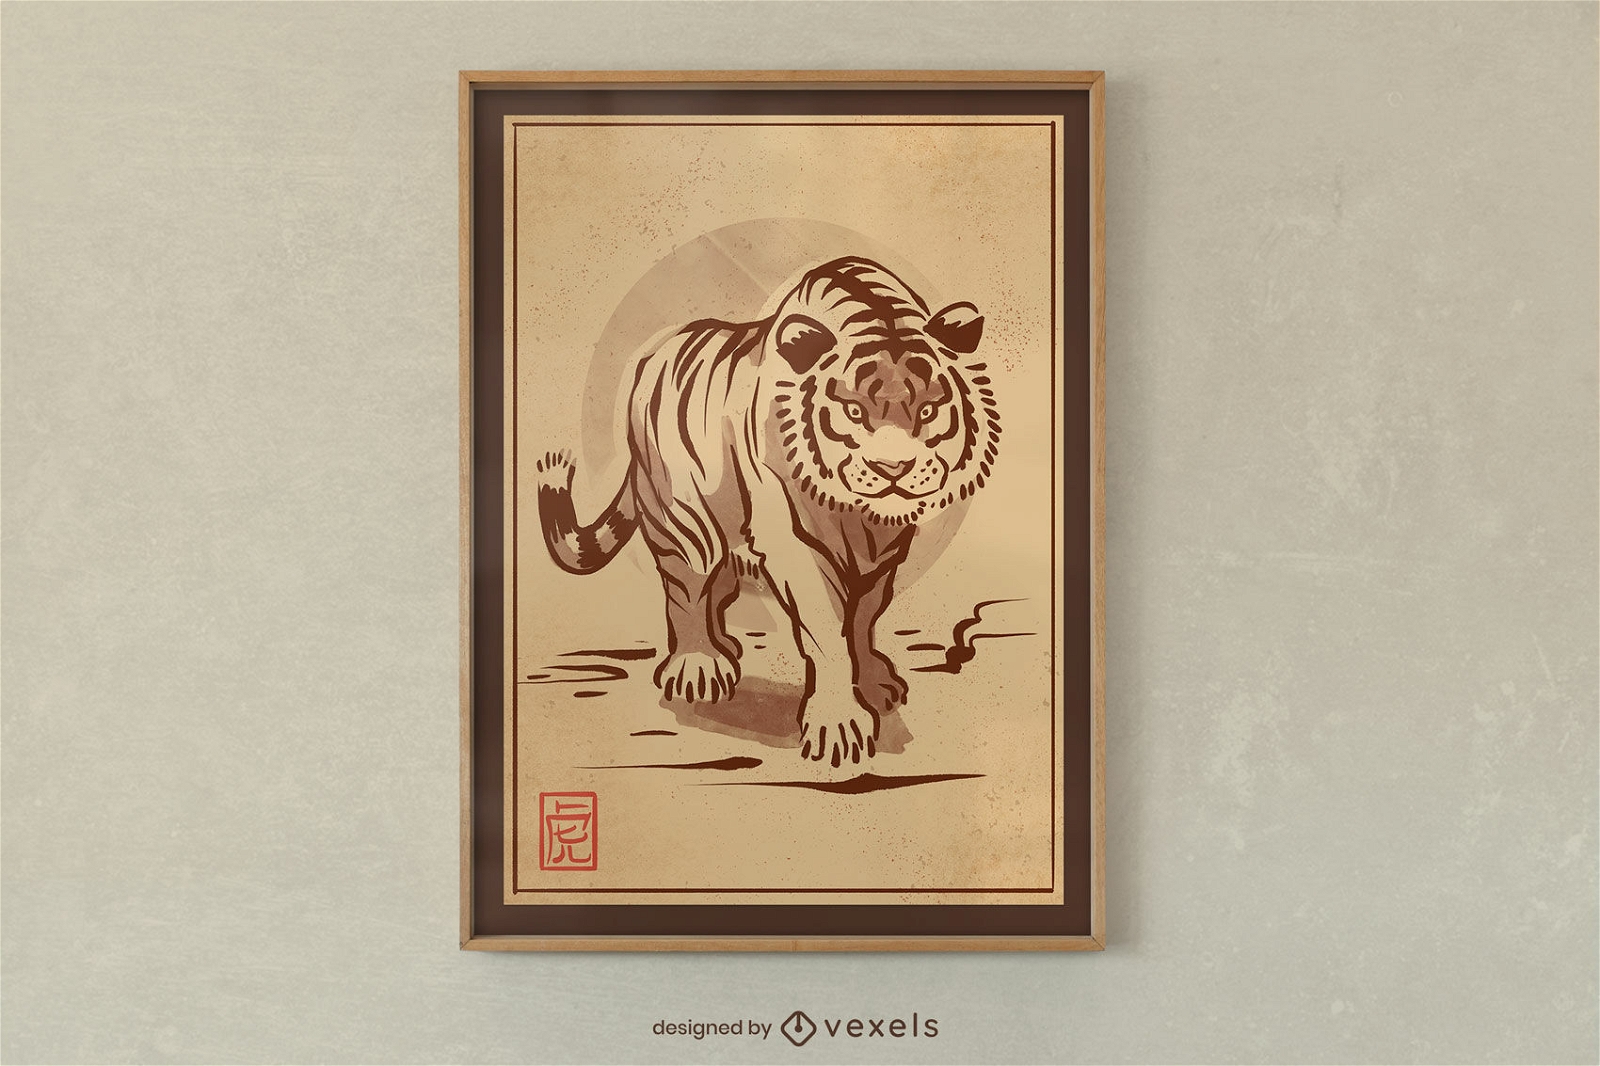 Japanese tiger ink poster design